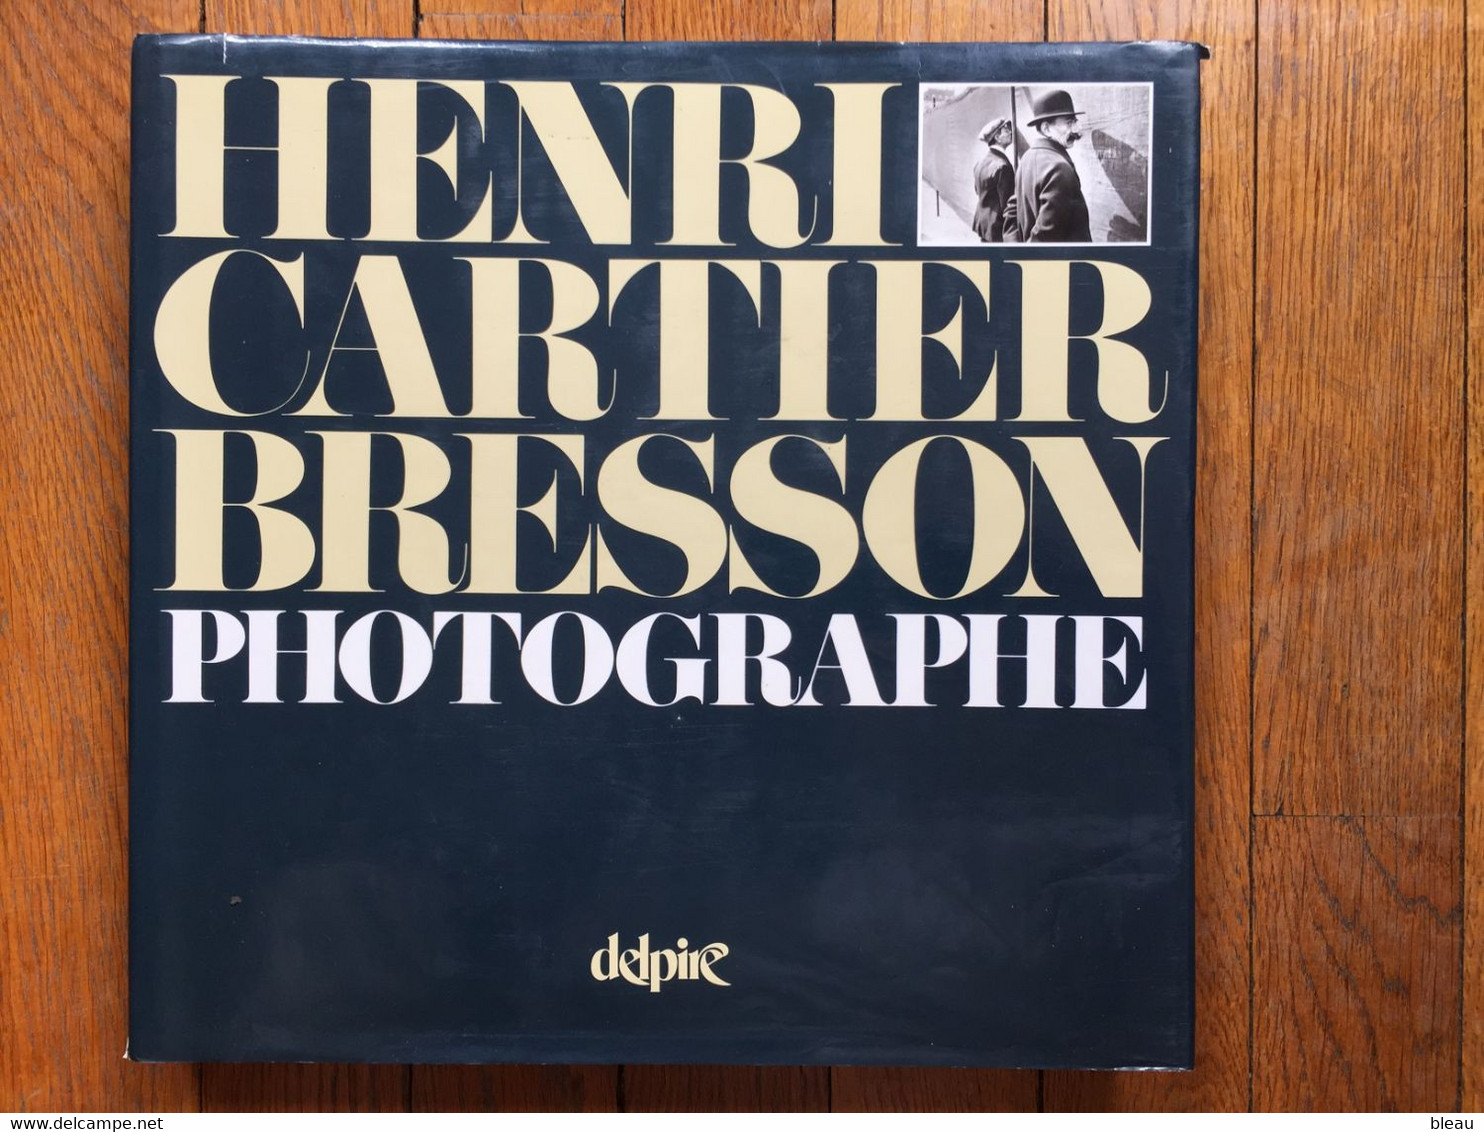 (photographie) Henri Cartier-Bresson Photographe. 155 Reproductions à Pleine Page. Delpire, 1982. - Art